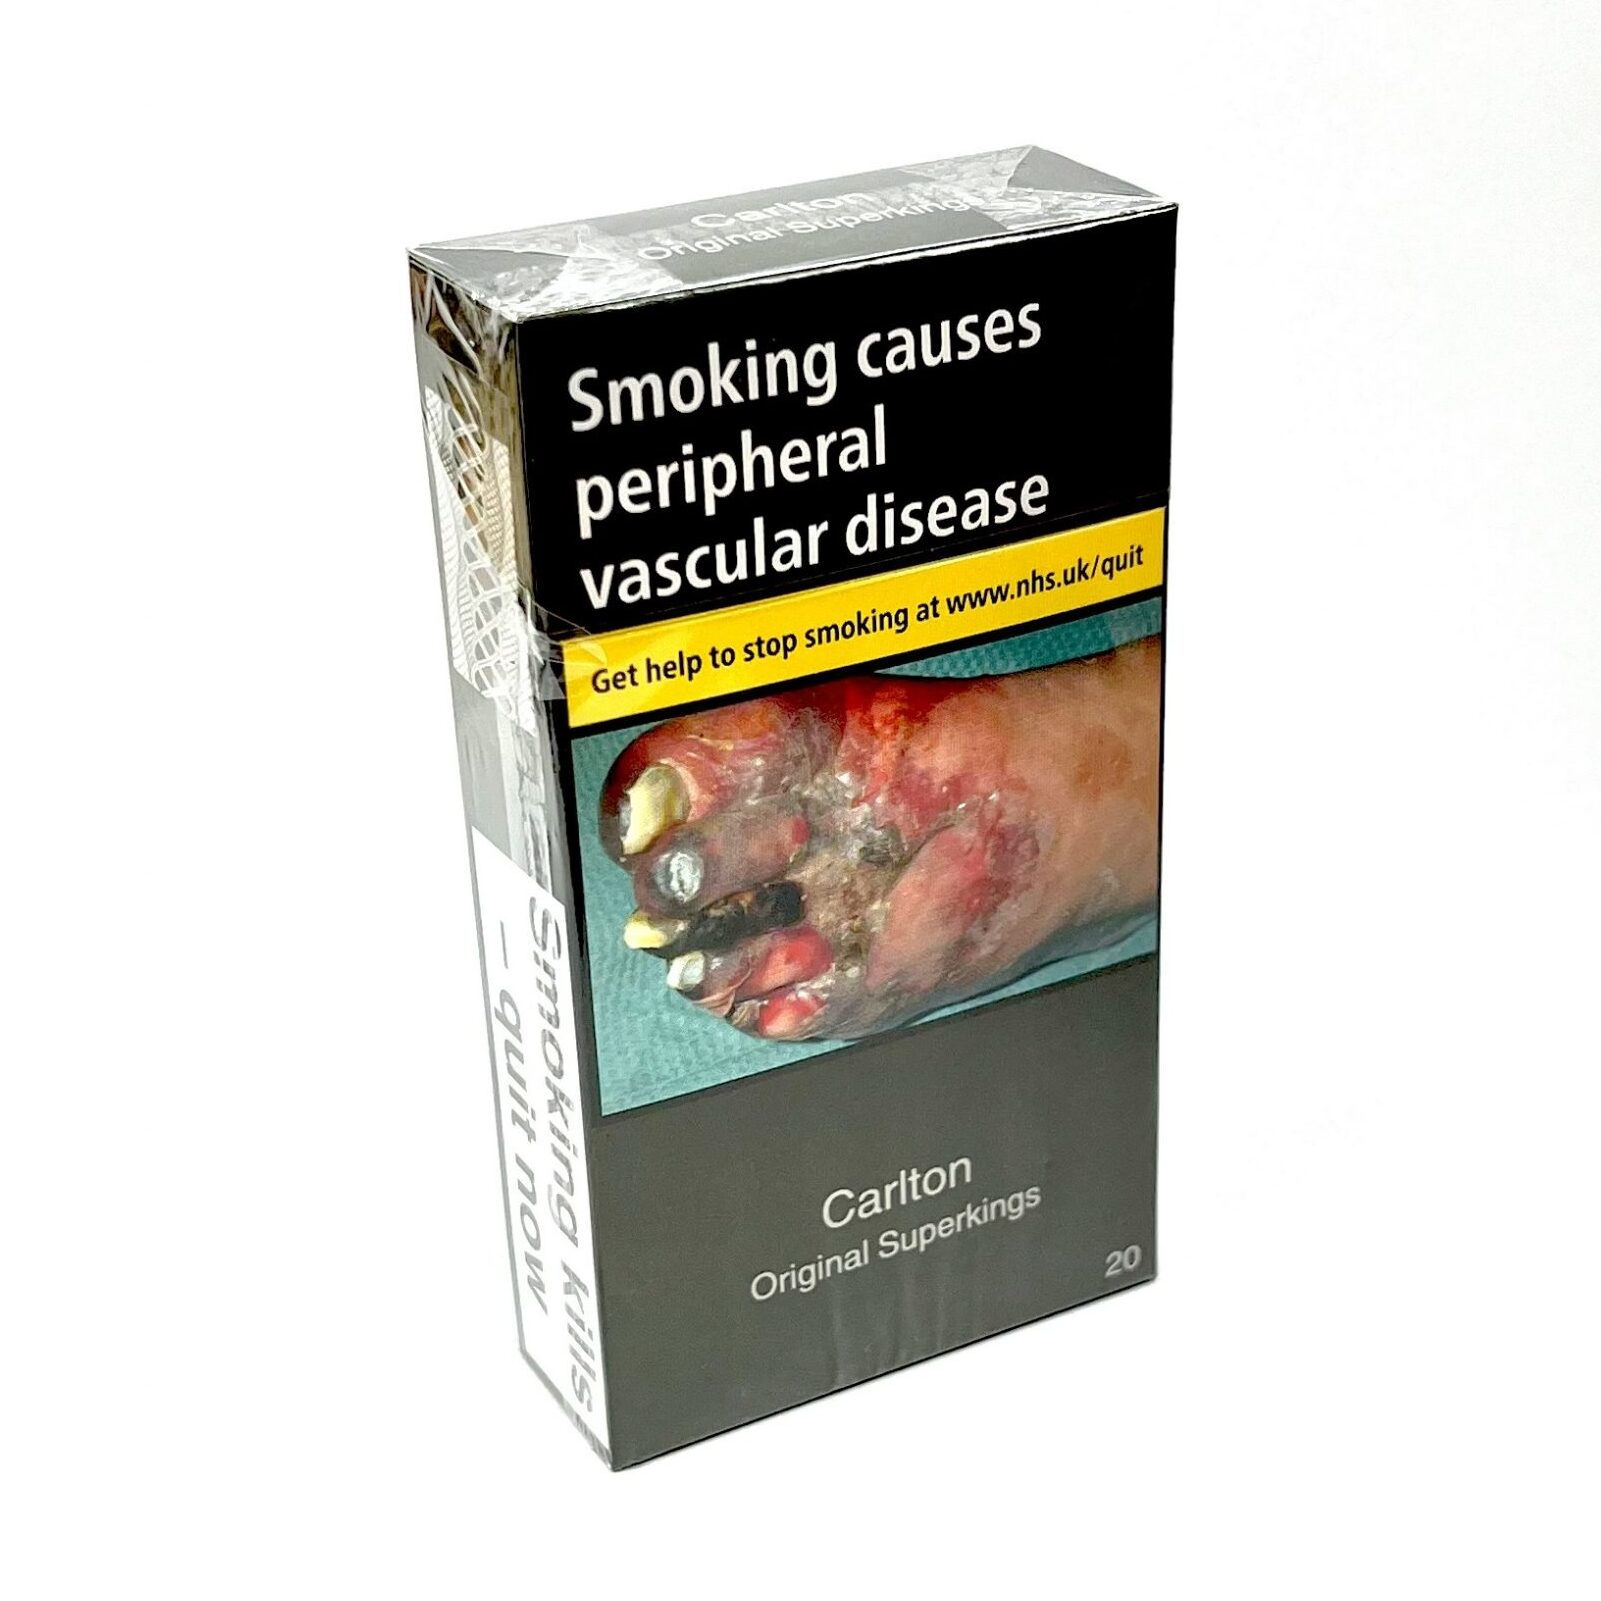 Carlton Original SK 20 Cigarettes (5 Packs)